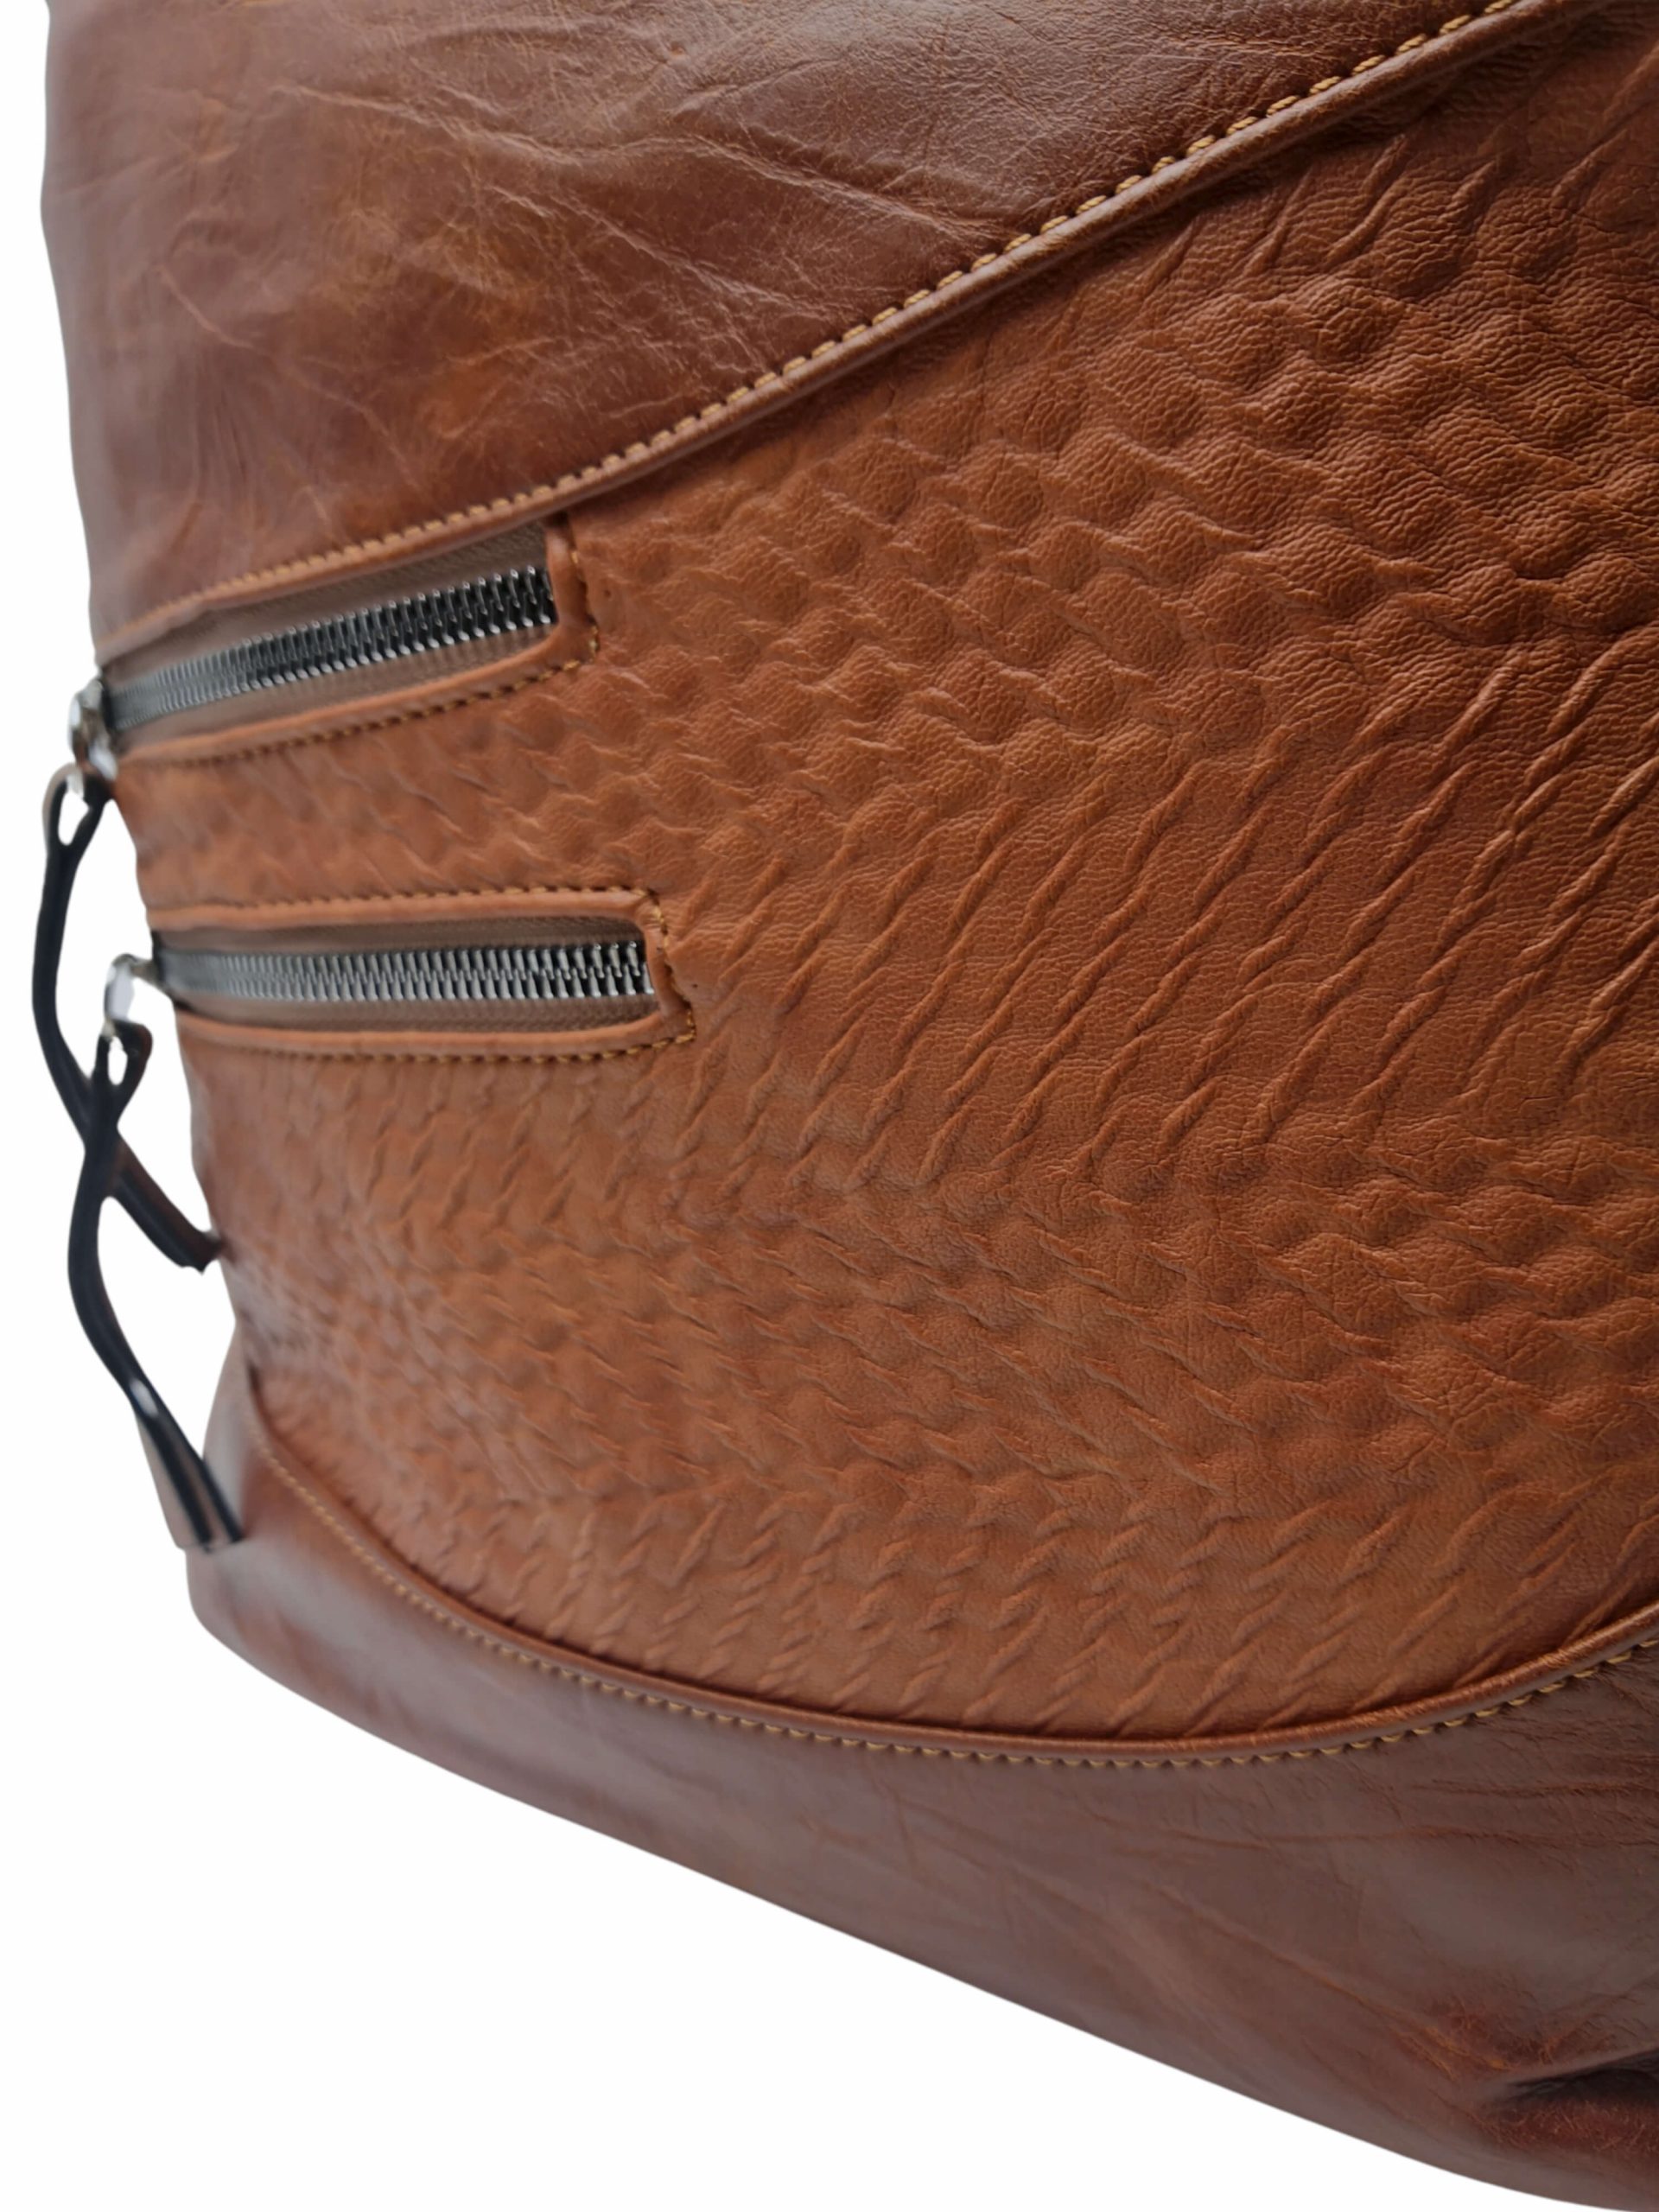 Středně hnědá crossbody kabelka s líbivou texturou, Tapple, H17360, detail vzoru crossbody kabelky